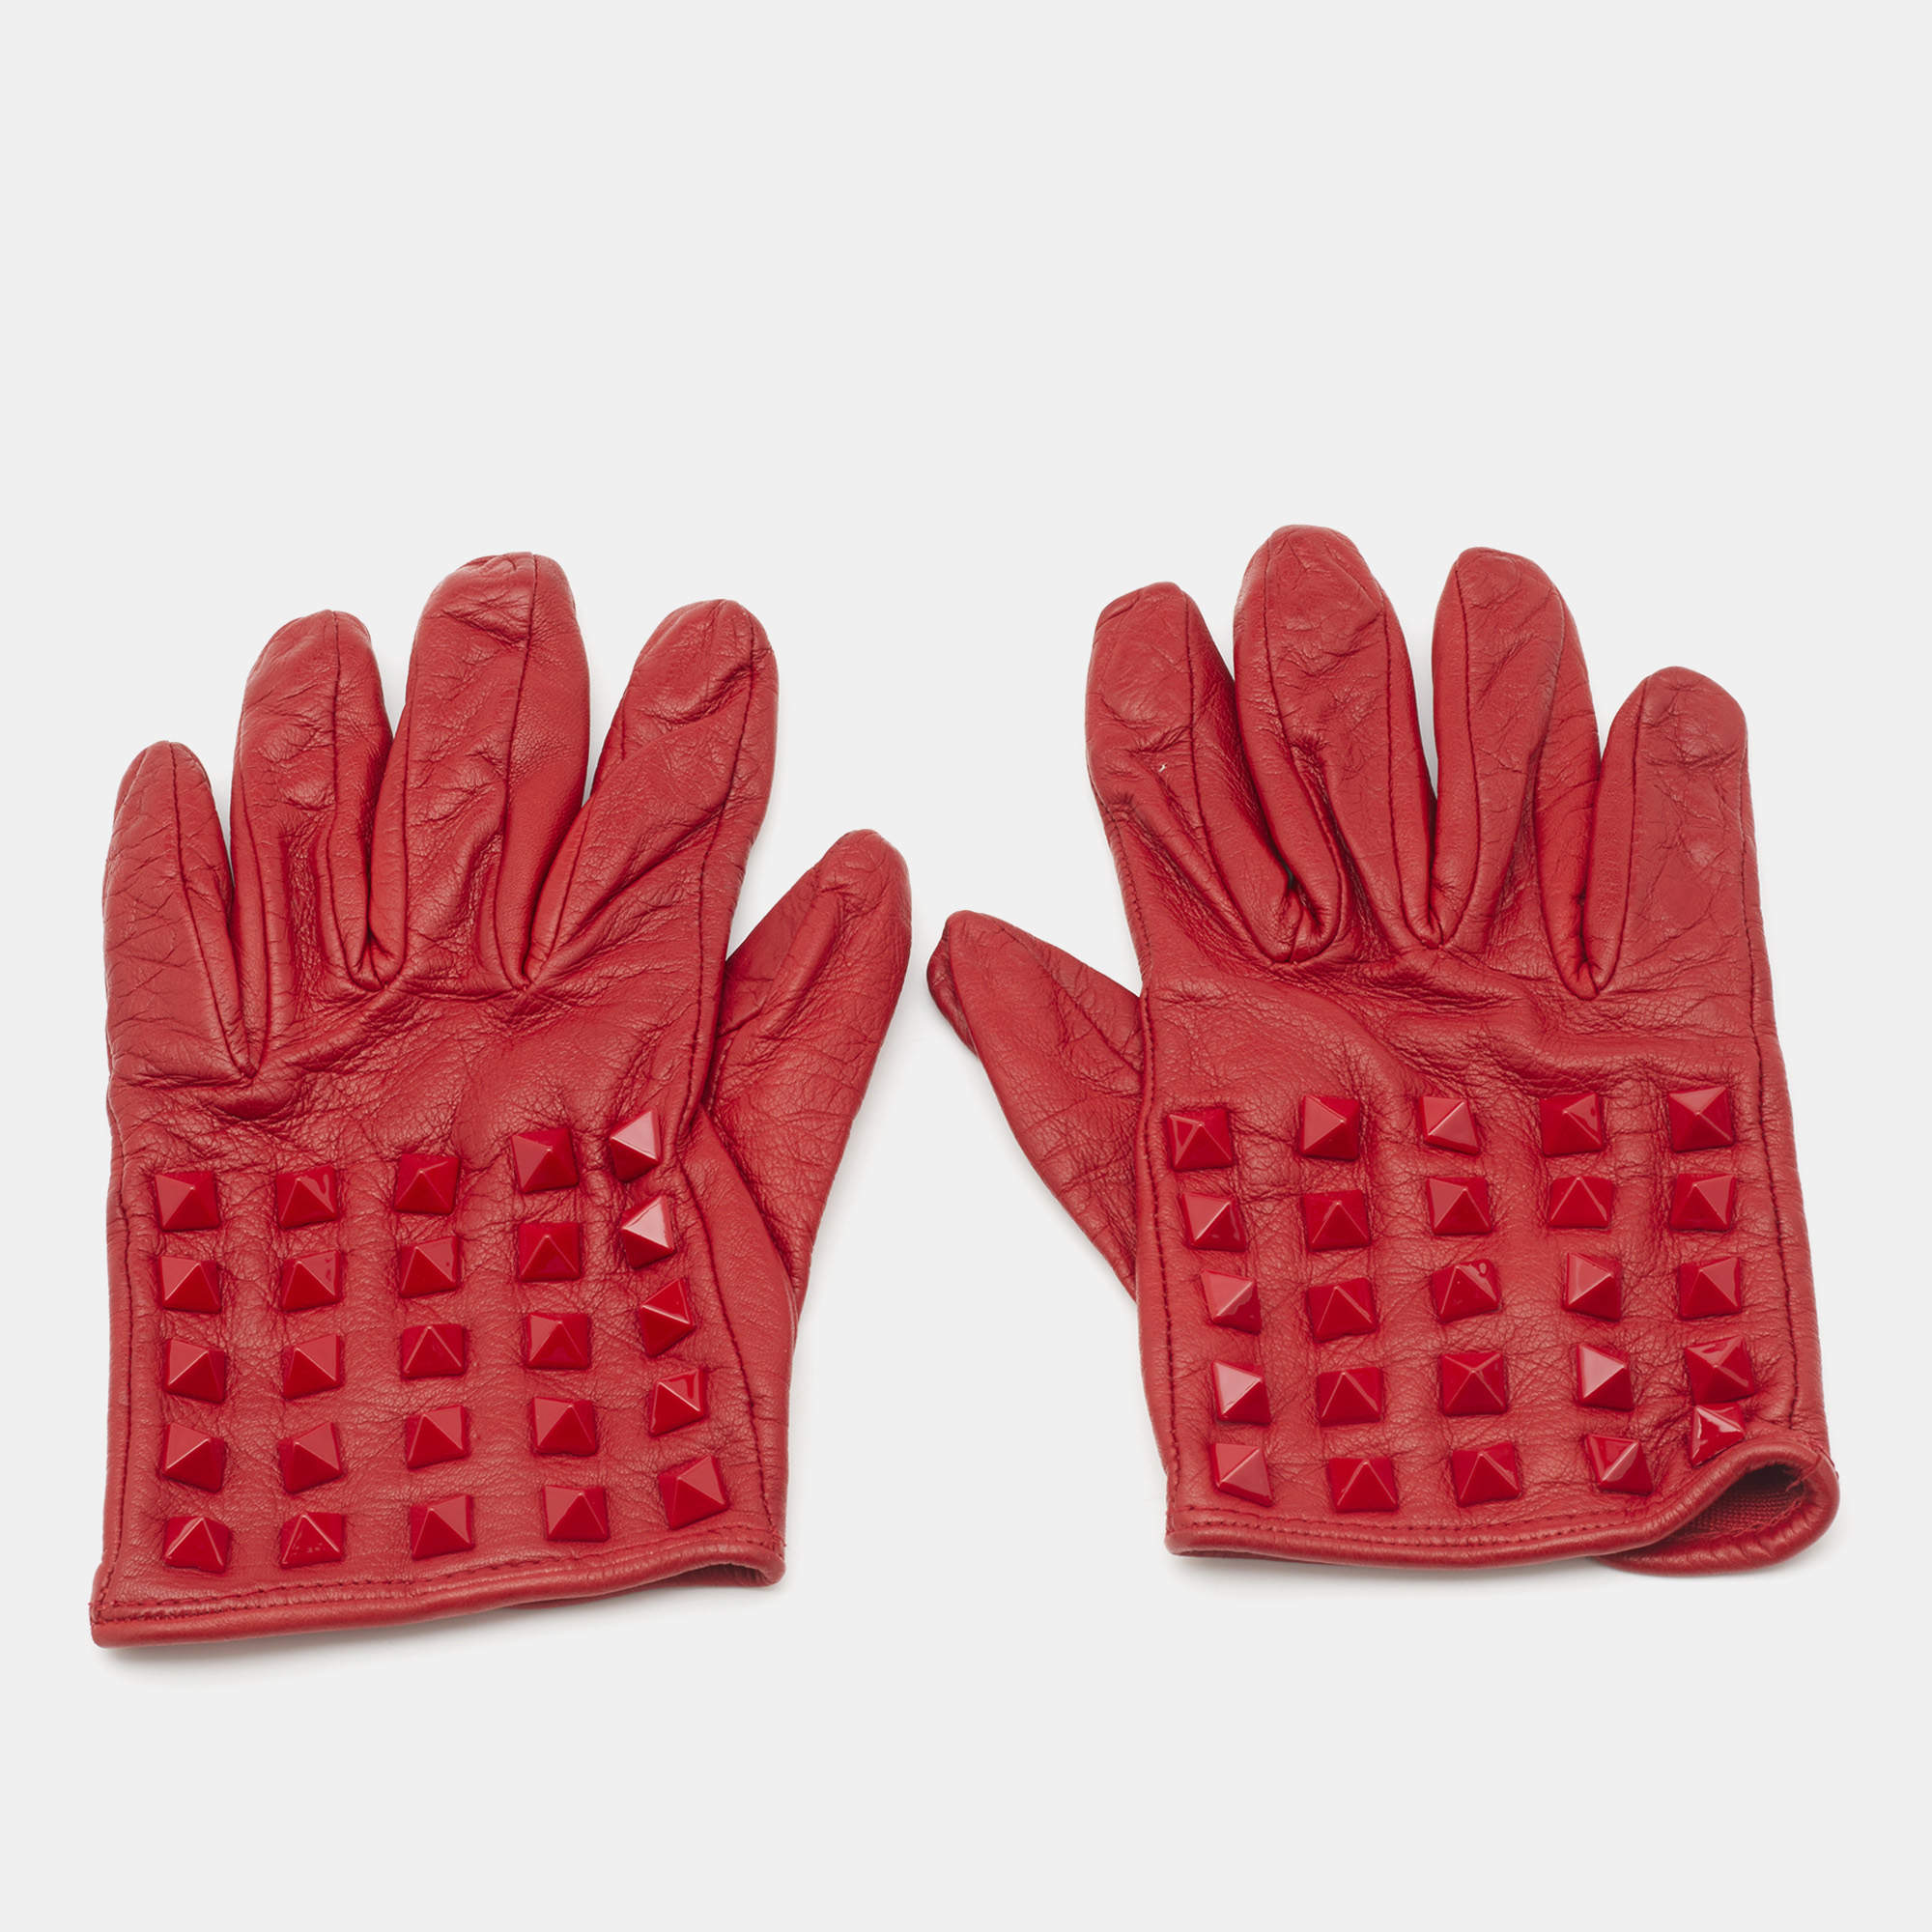 Louis Vuitton, Accessories, Louis Vuitton Leather Gloves